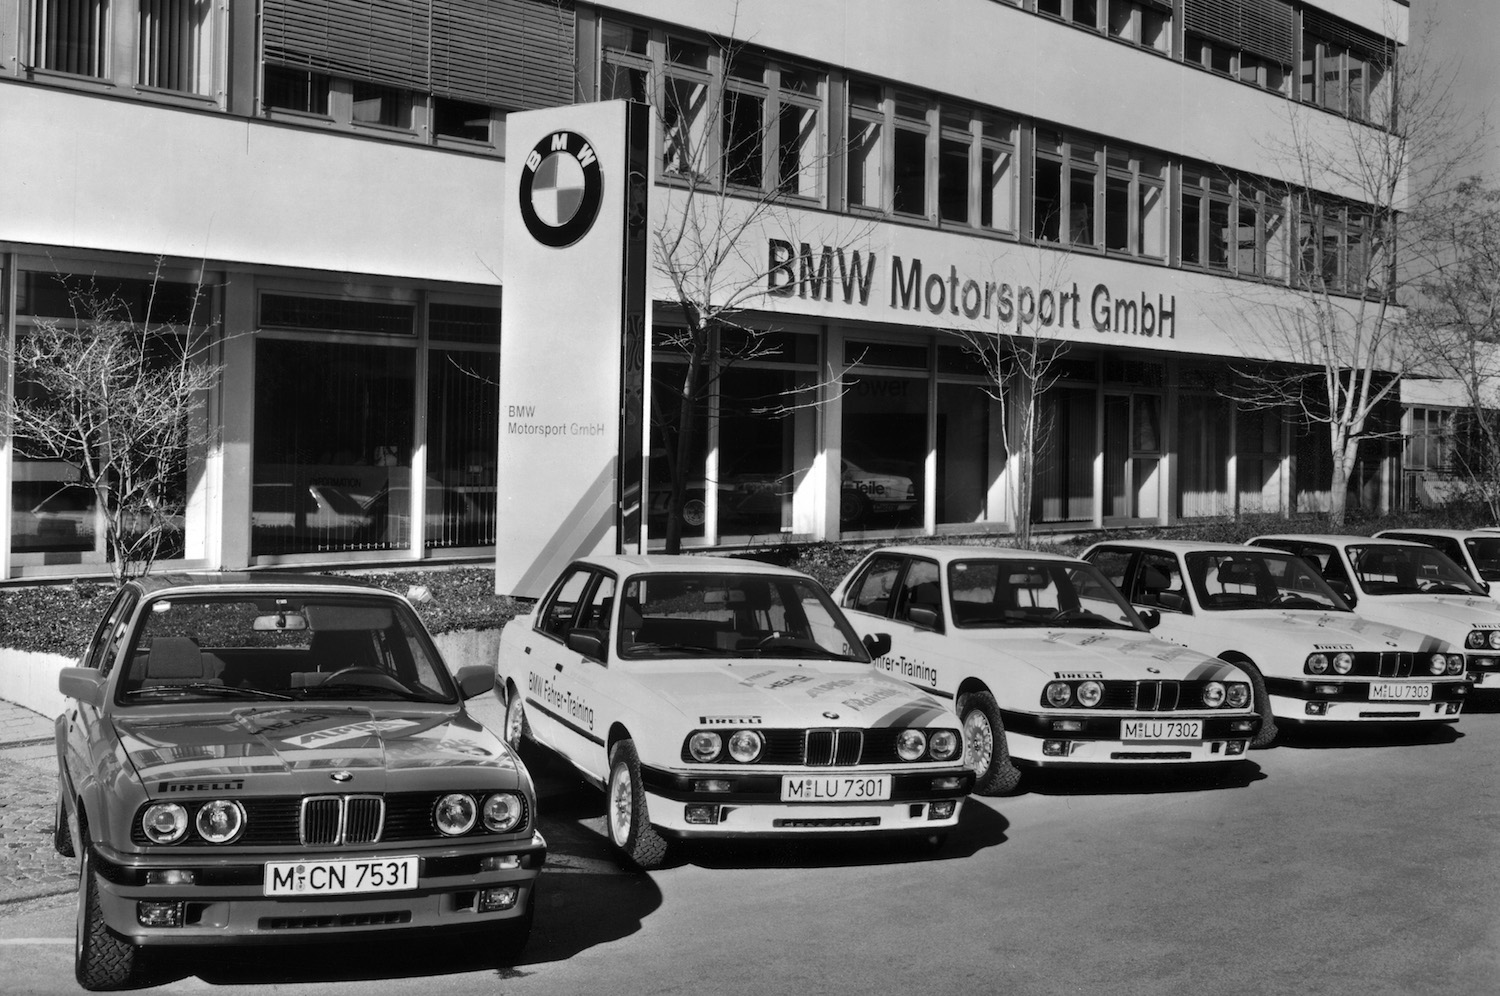 1972 wird die BMW Motorsport GmbH gegründet. Sie ist für alle Rennsportaktivitäten sowie für die Entwicklung und Produktion der BMW M-Modelle zuständig.